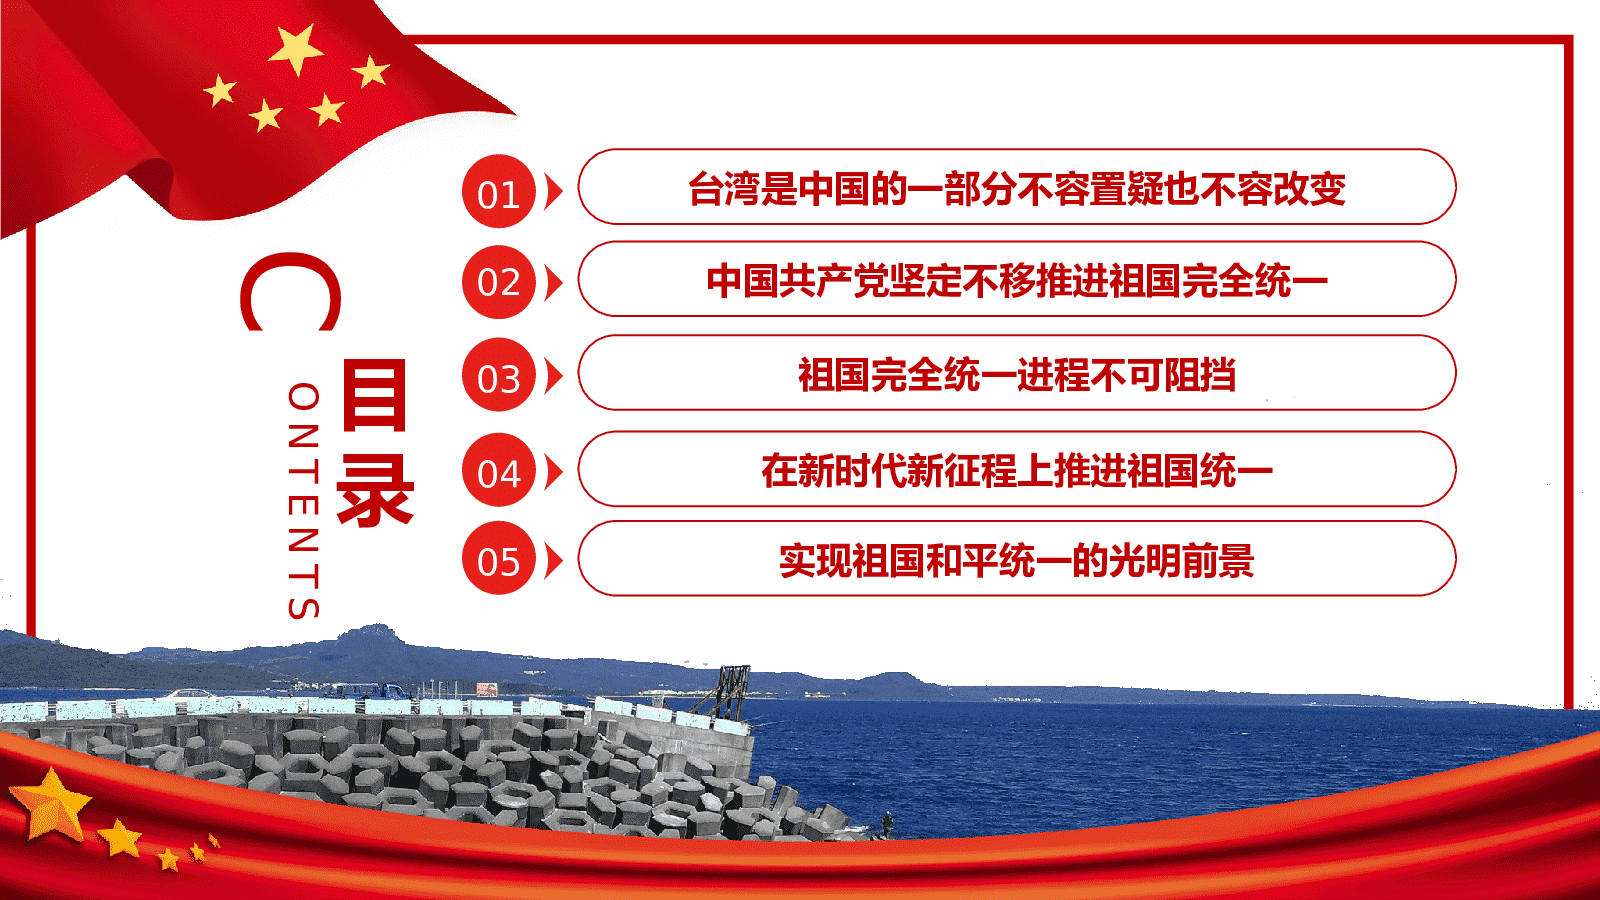 国台办：台湾是中国内政 不容外部干涉_凤凰网视频_凤凰网